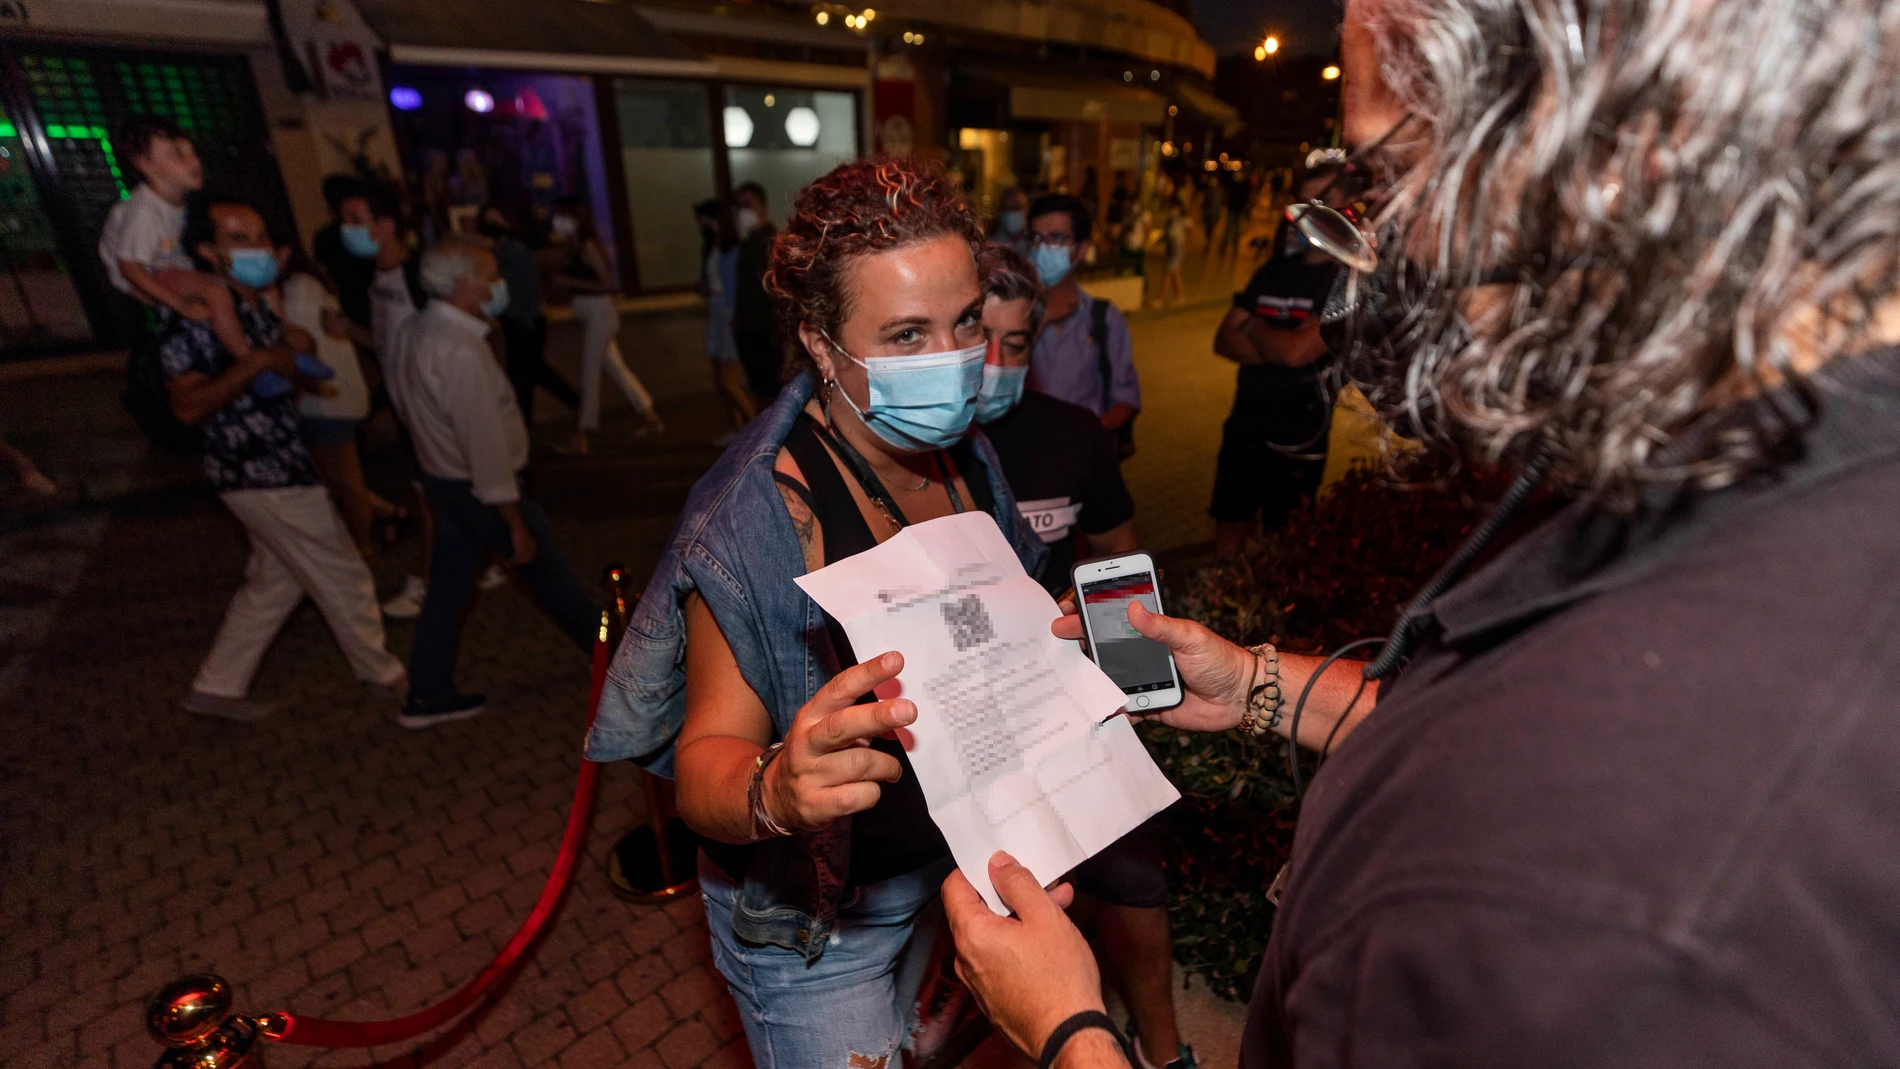 Una mujer muestra un certificado con sus vacunas contra el COVID-19 en regla para acceder a un local en Sansenxo, pasadas las 01:00 horas, a 17 de julio de 2021, en Pontevedra, Galicia (España). EP